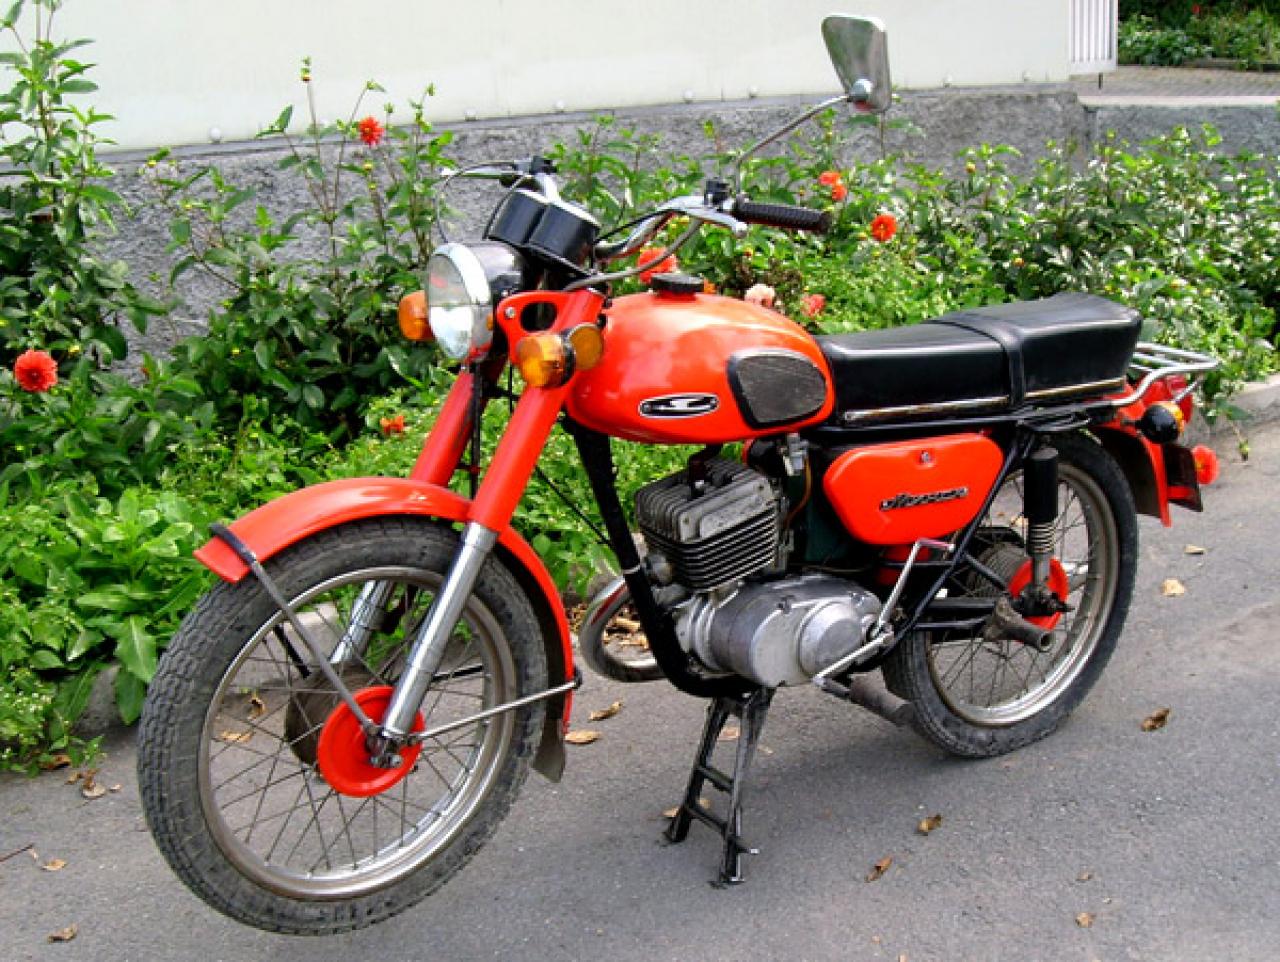 Минск нового образца фото мотоцикл